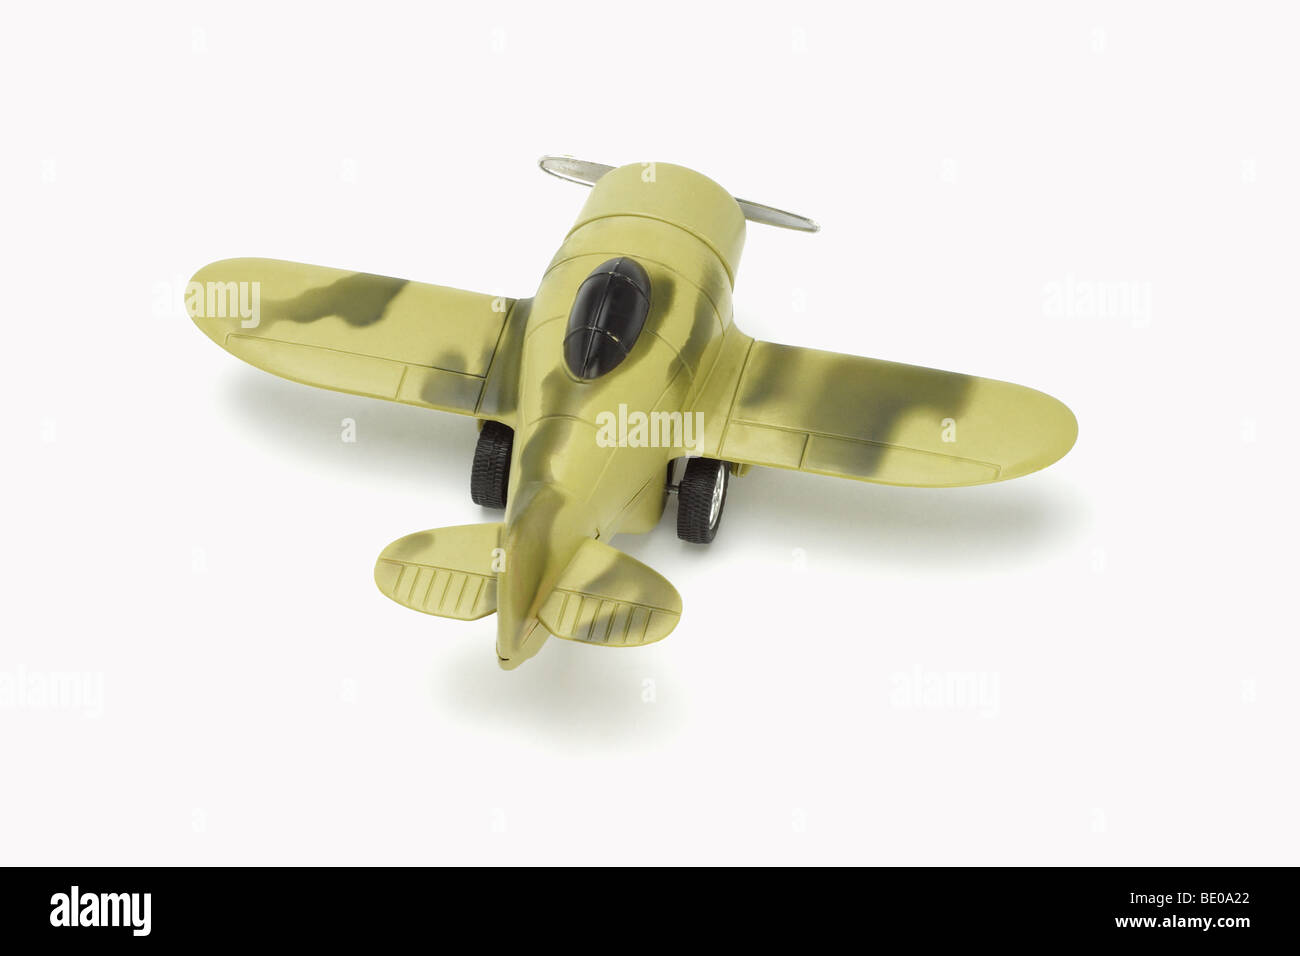 Aviones militares de juguete con pintura de camuflaje sobre fondo blanco. Foto de stock